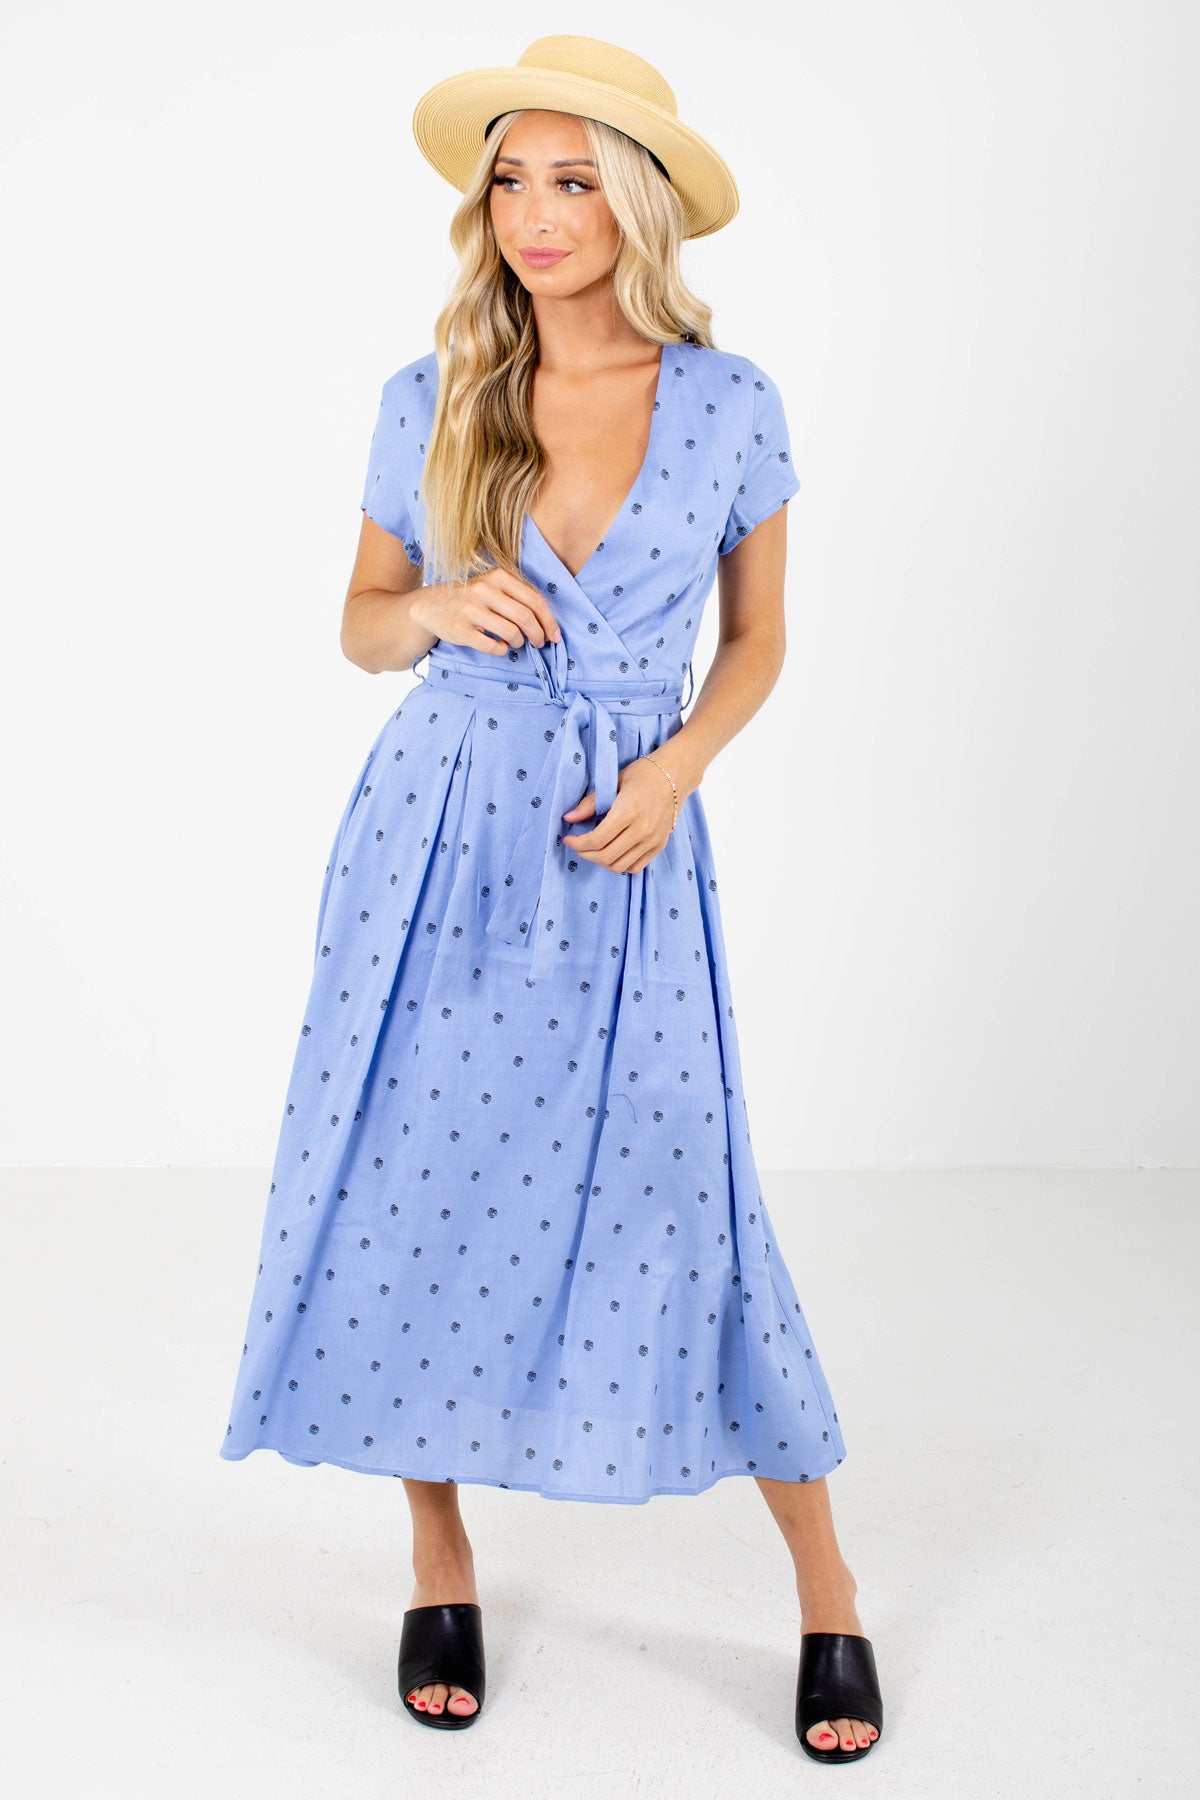 Blue Faux Wrap Style Boutique Midi Dresses for Women